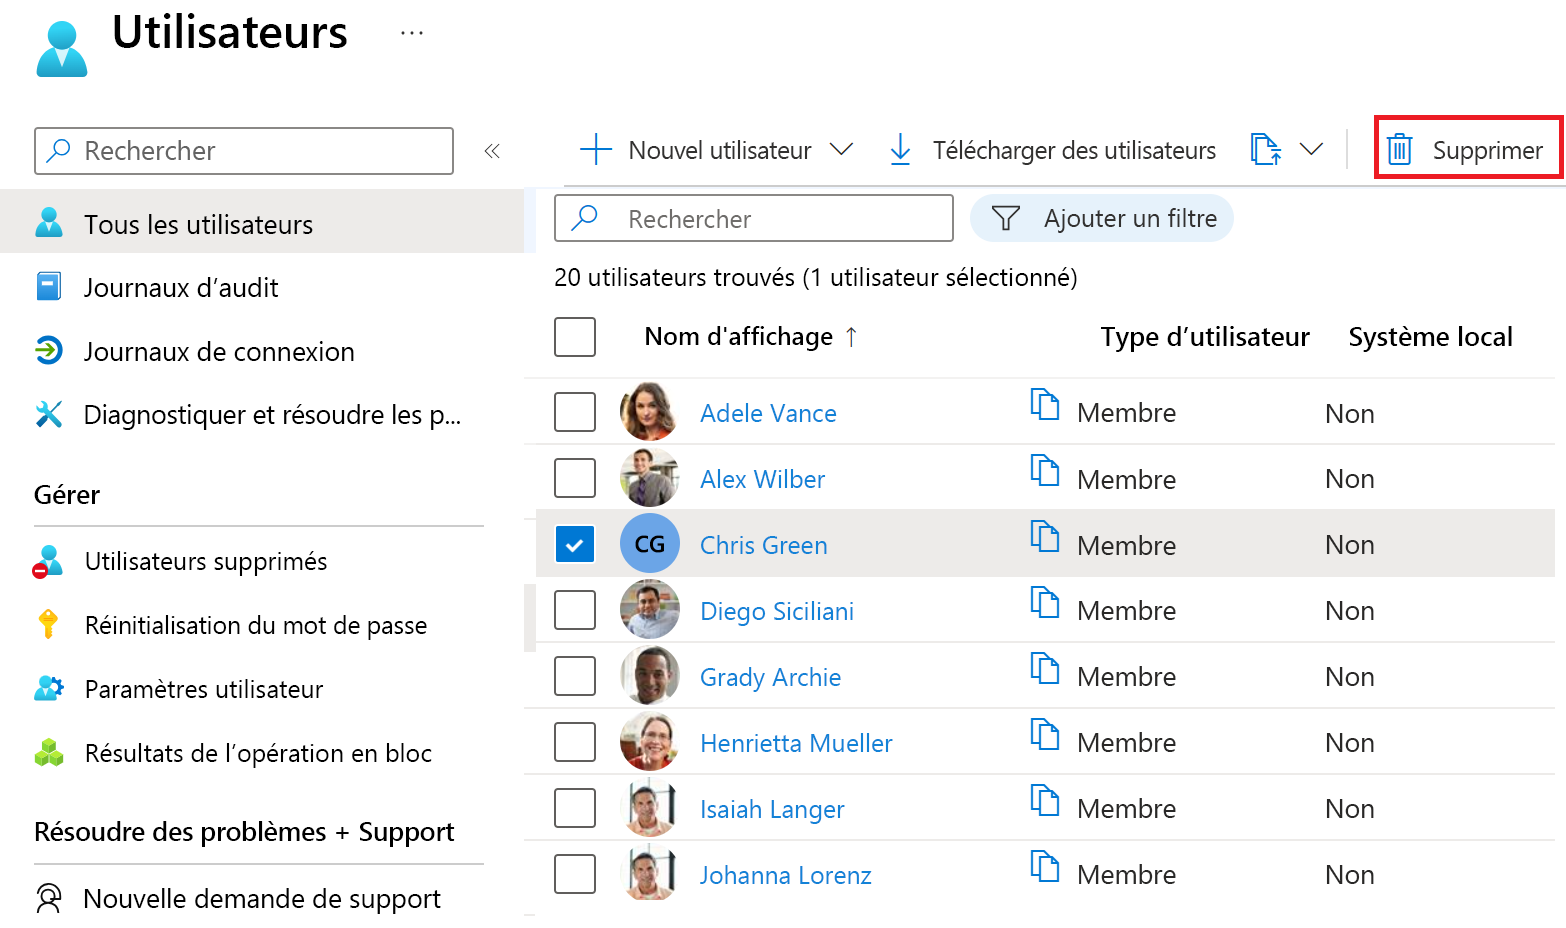 Capture d’écran montrant la liste de tous les utilisateurs Azure AD avec une case d’utilisateur cochée et une autre mise en évidence indiquant la possibilité de sélectionner plusieurs utilisateurs dans la liste.